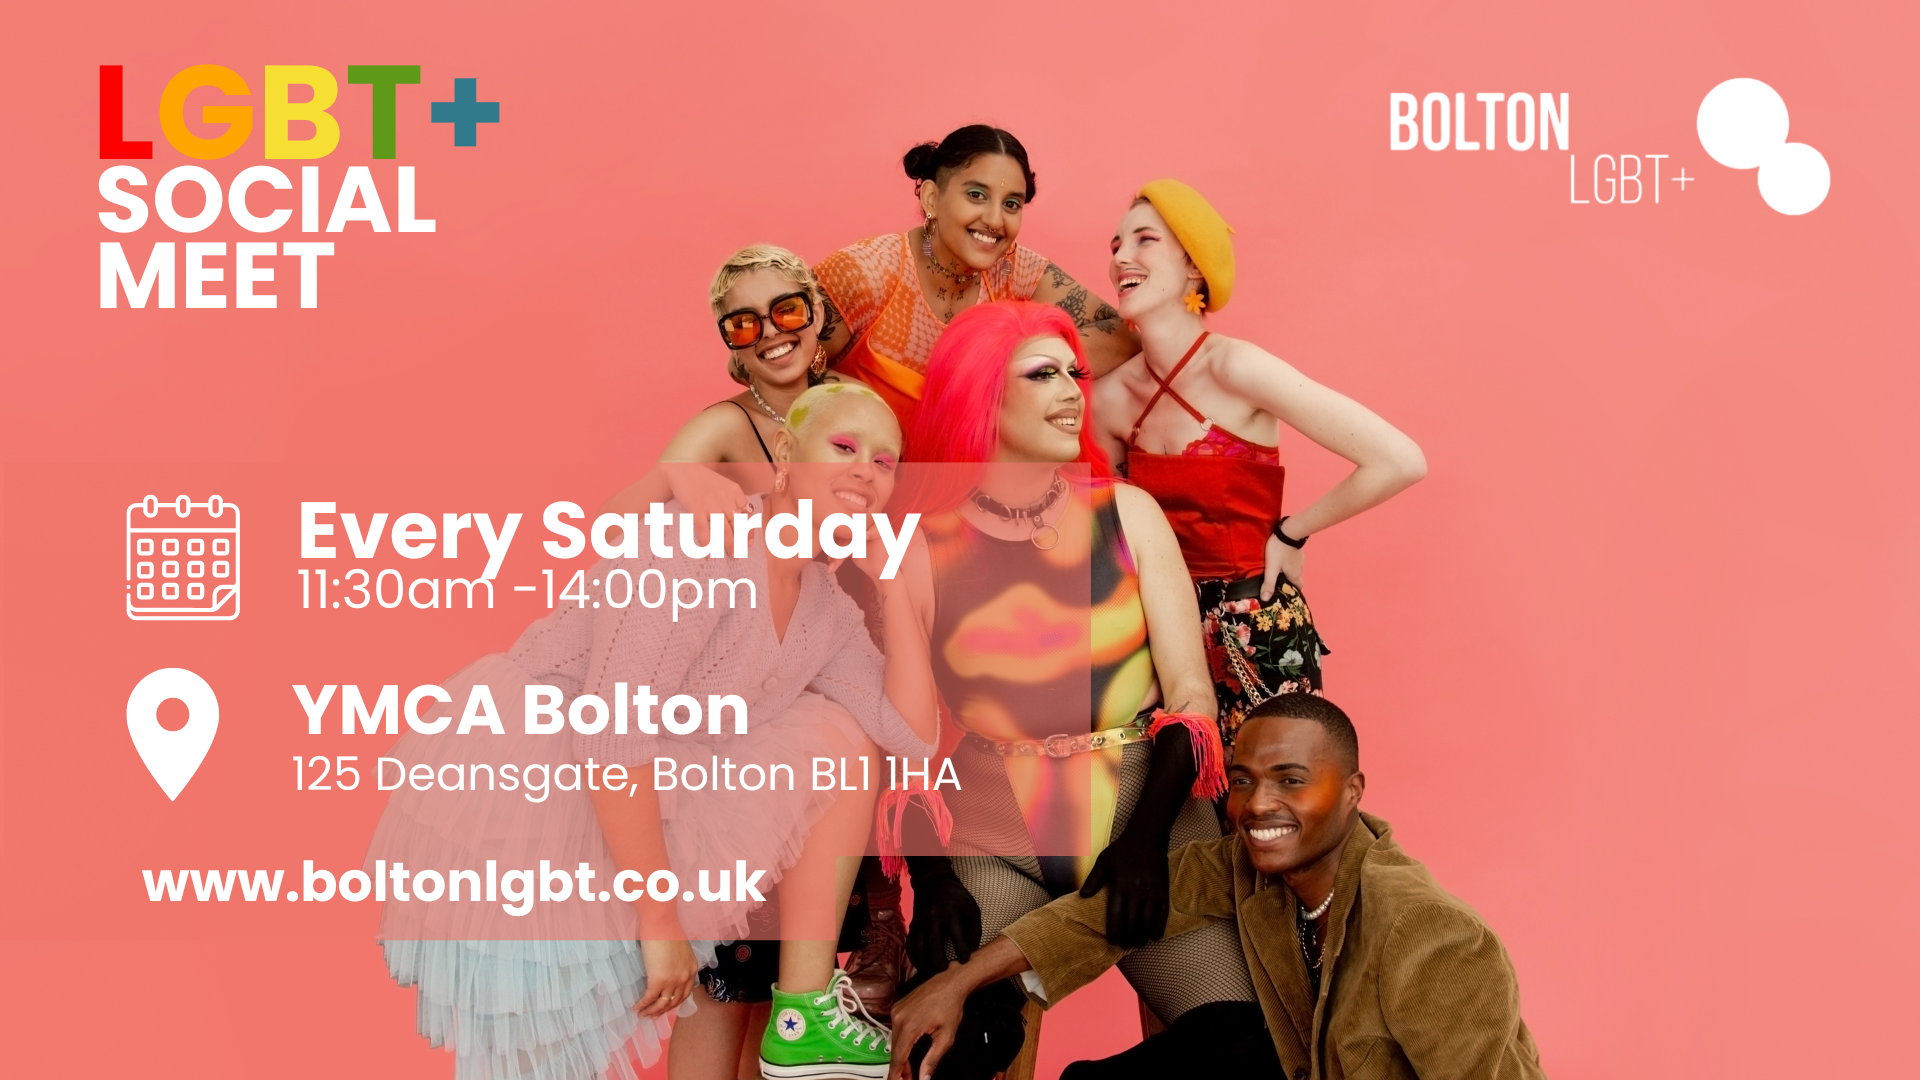 Bolton LGBT+ Social Meet